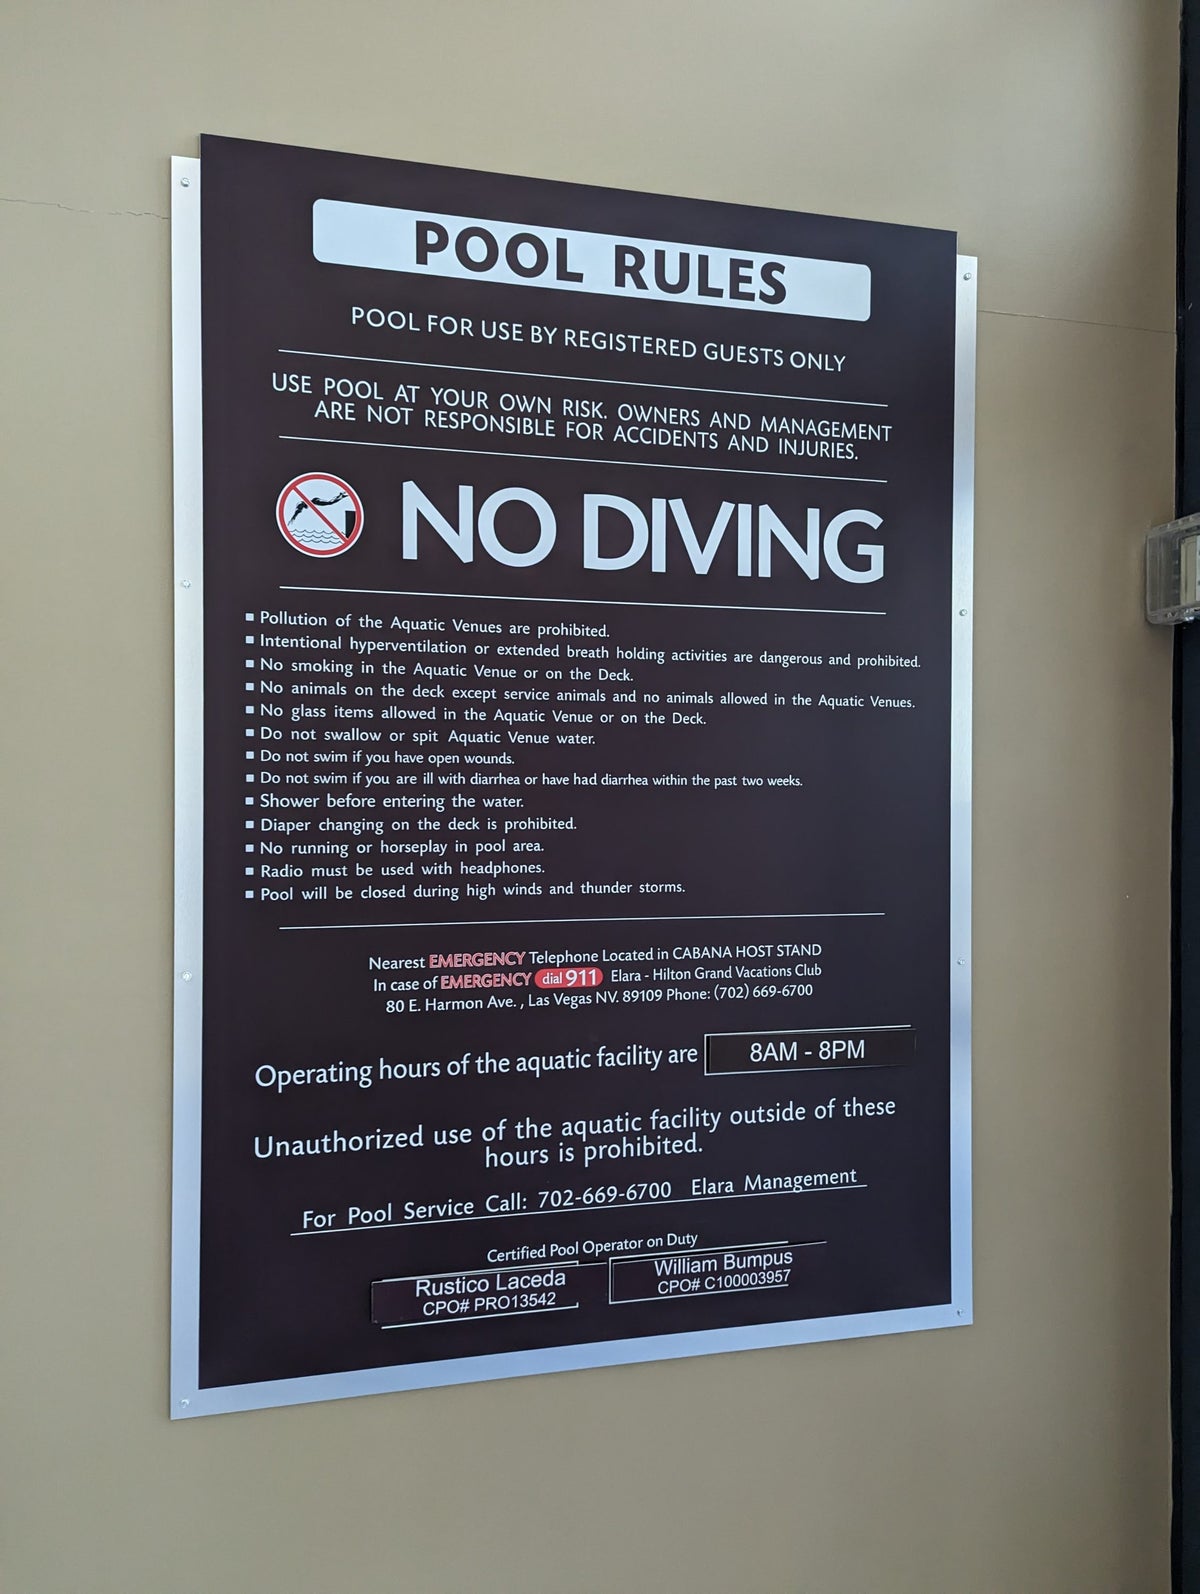 Hilton Grand Vacations Elara Las Vegas pool rules